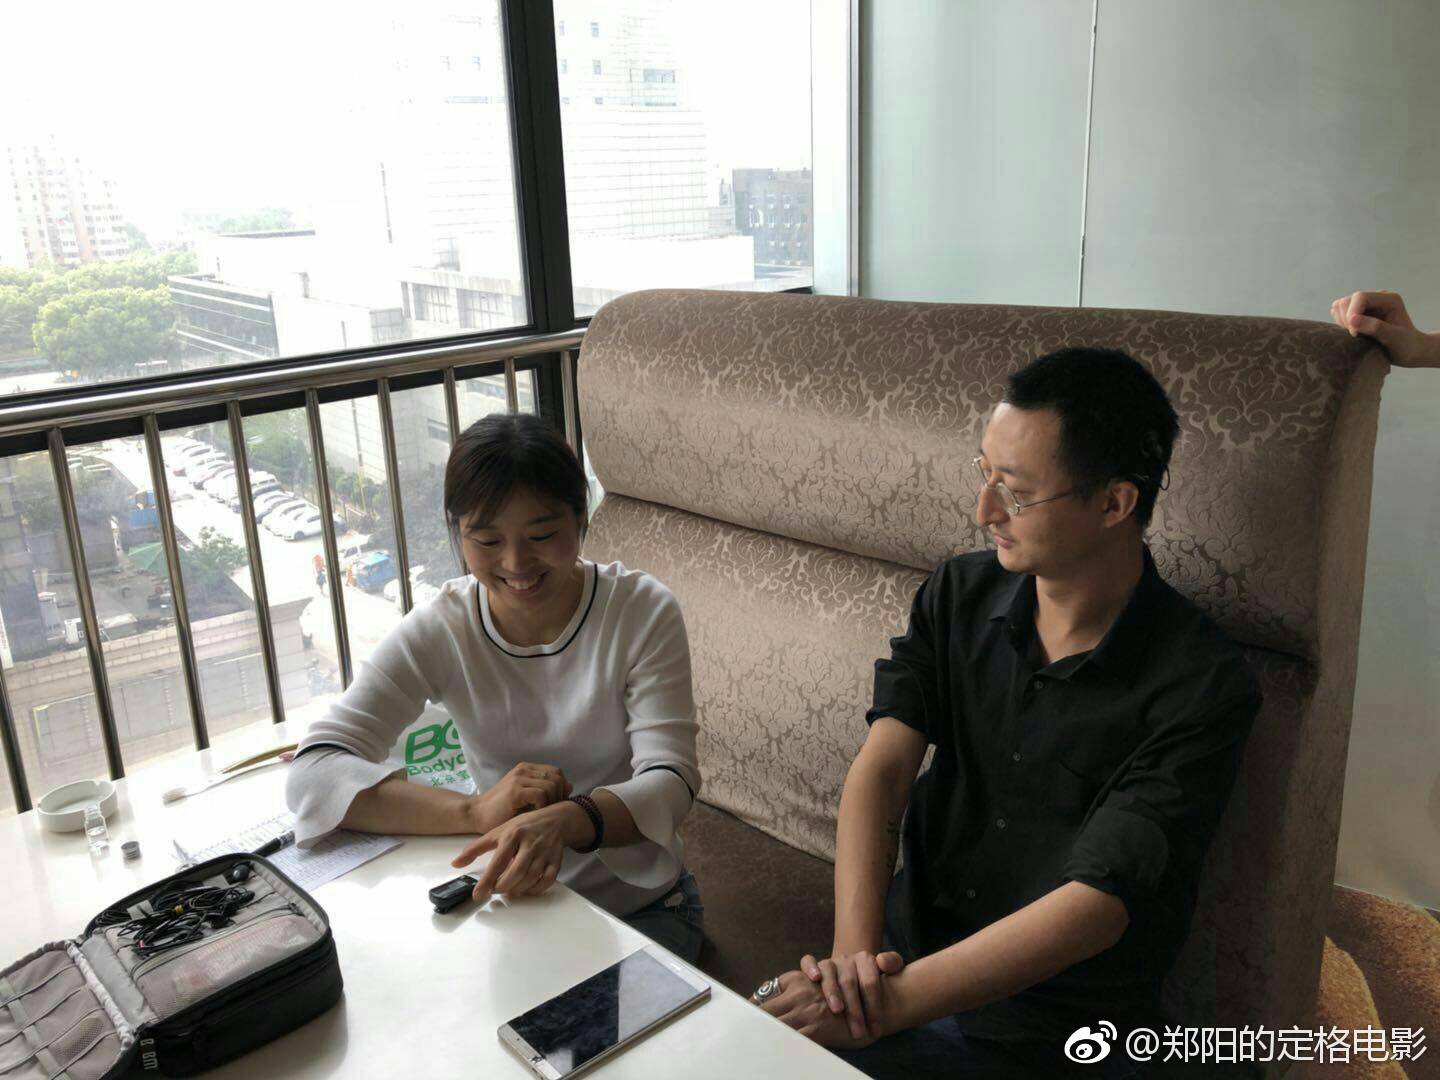 今天我去南京调机人工耳蜗,遇见一位父亲带着